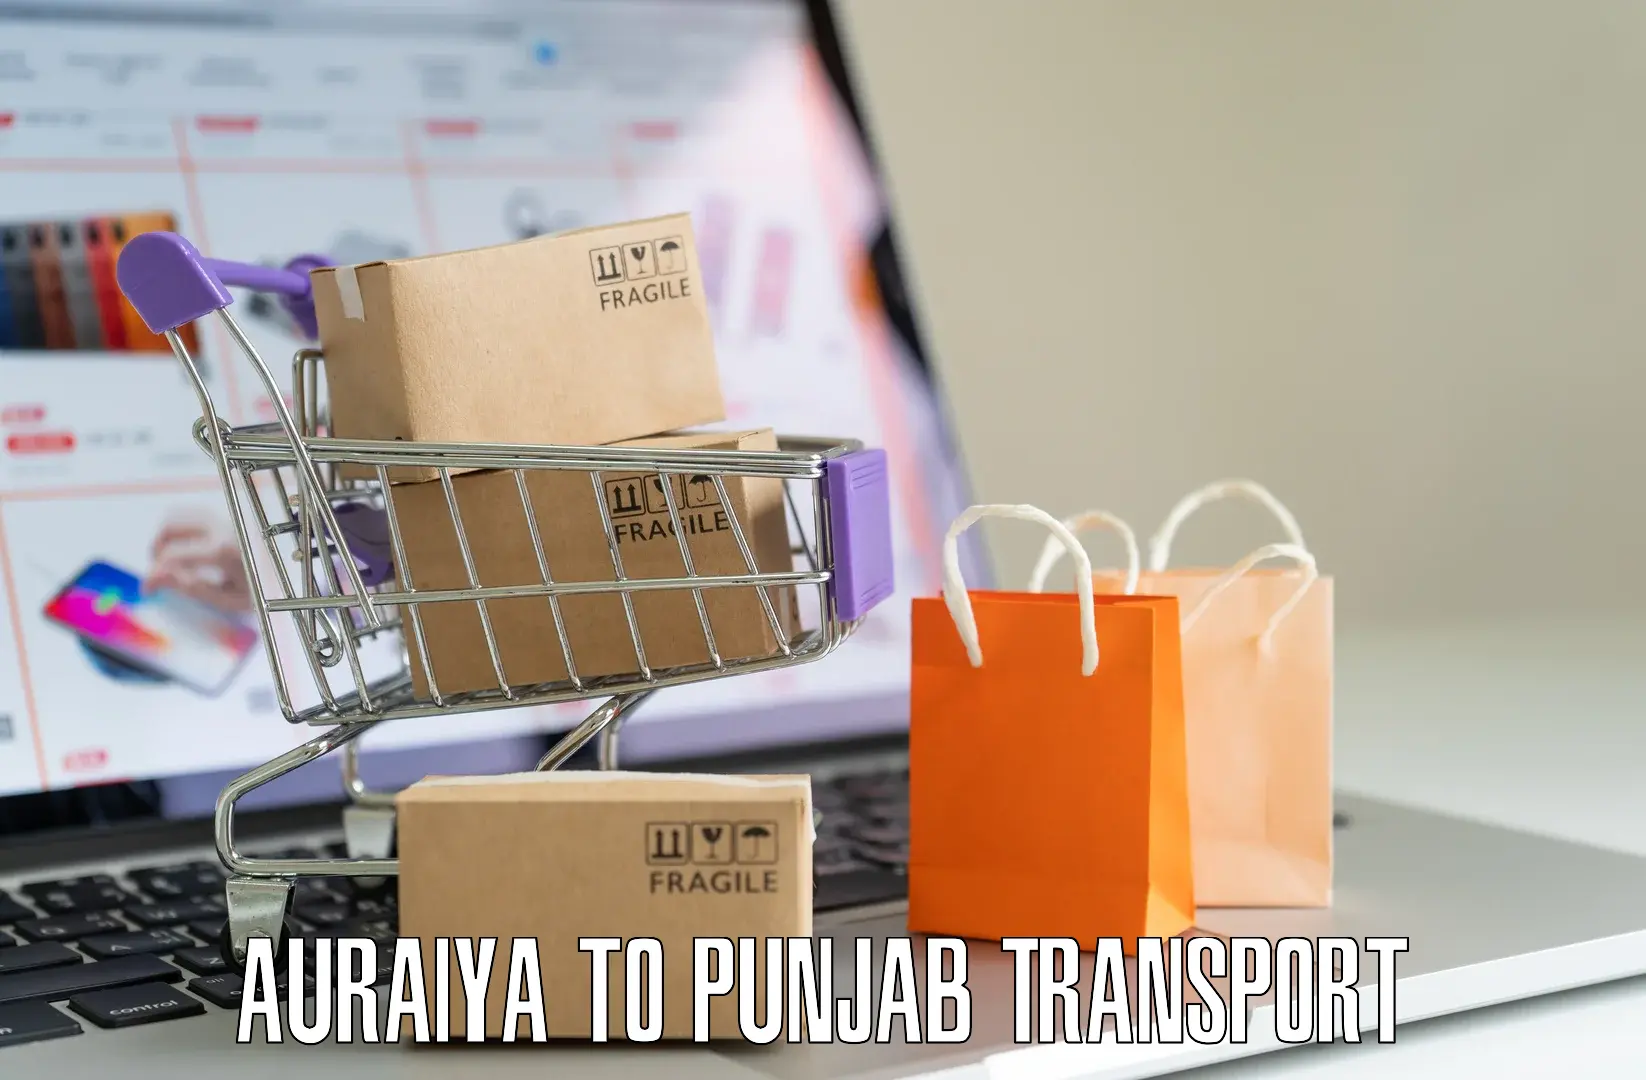 Shipping partner Auraiya to Punjab